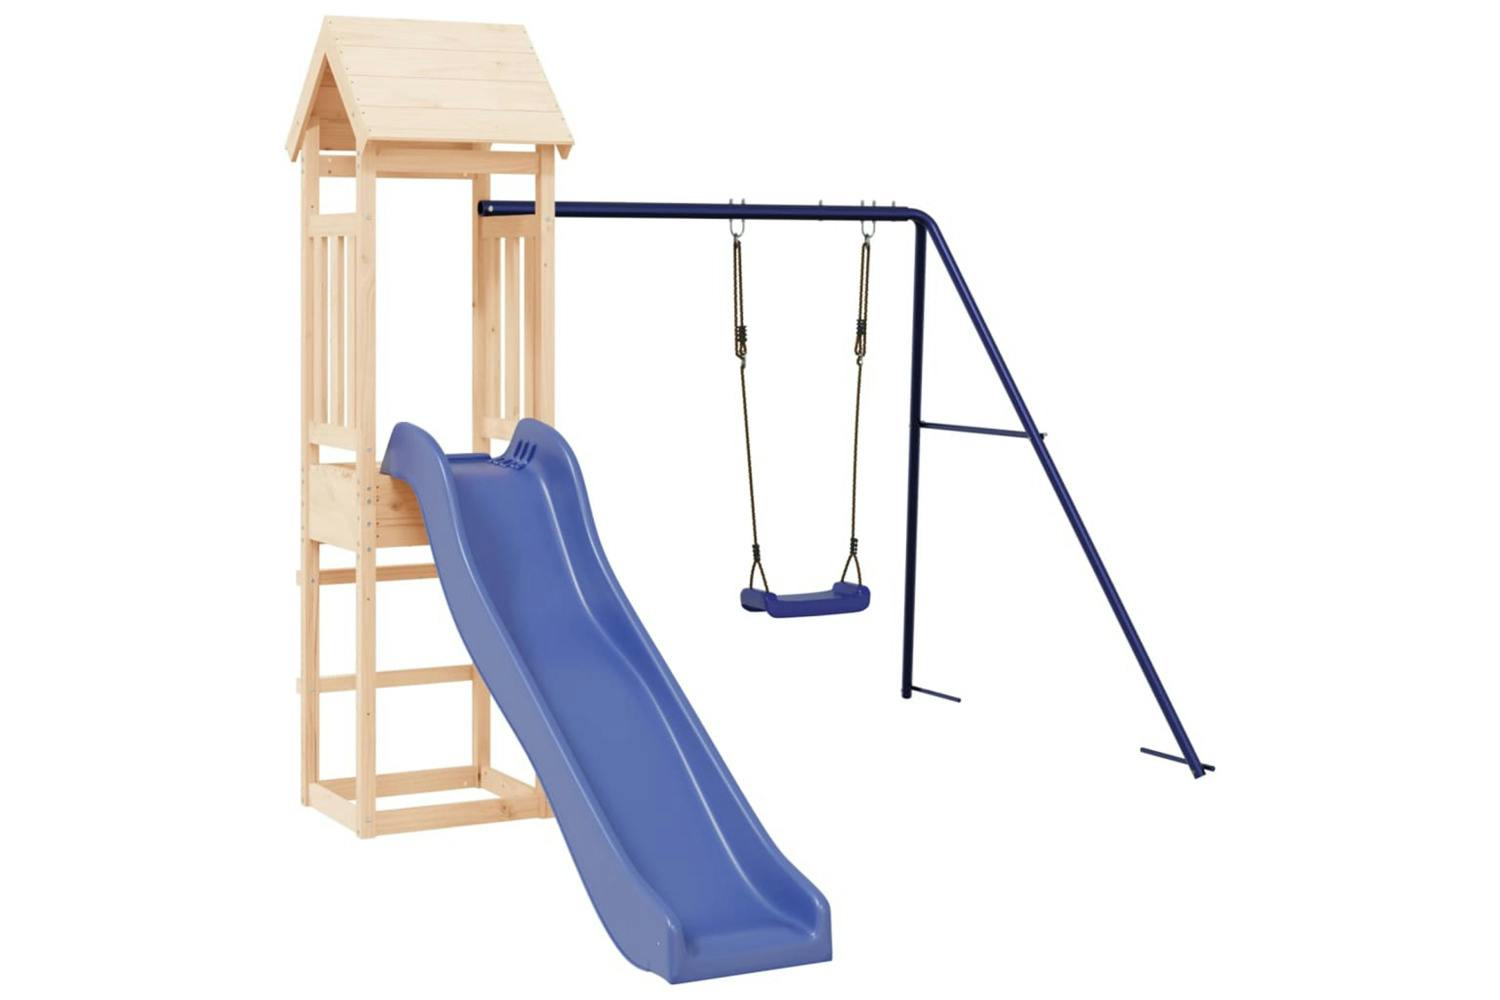 Vidaxl 3155819 Playhouse With Slide Swing Solid Wood Pine